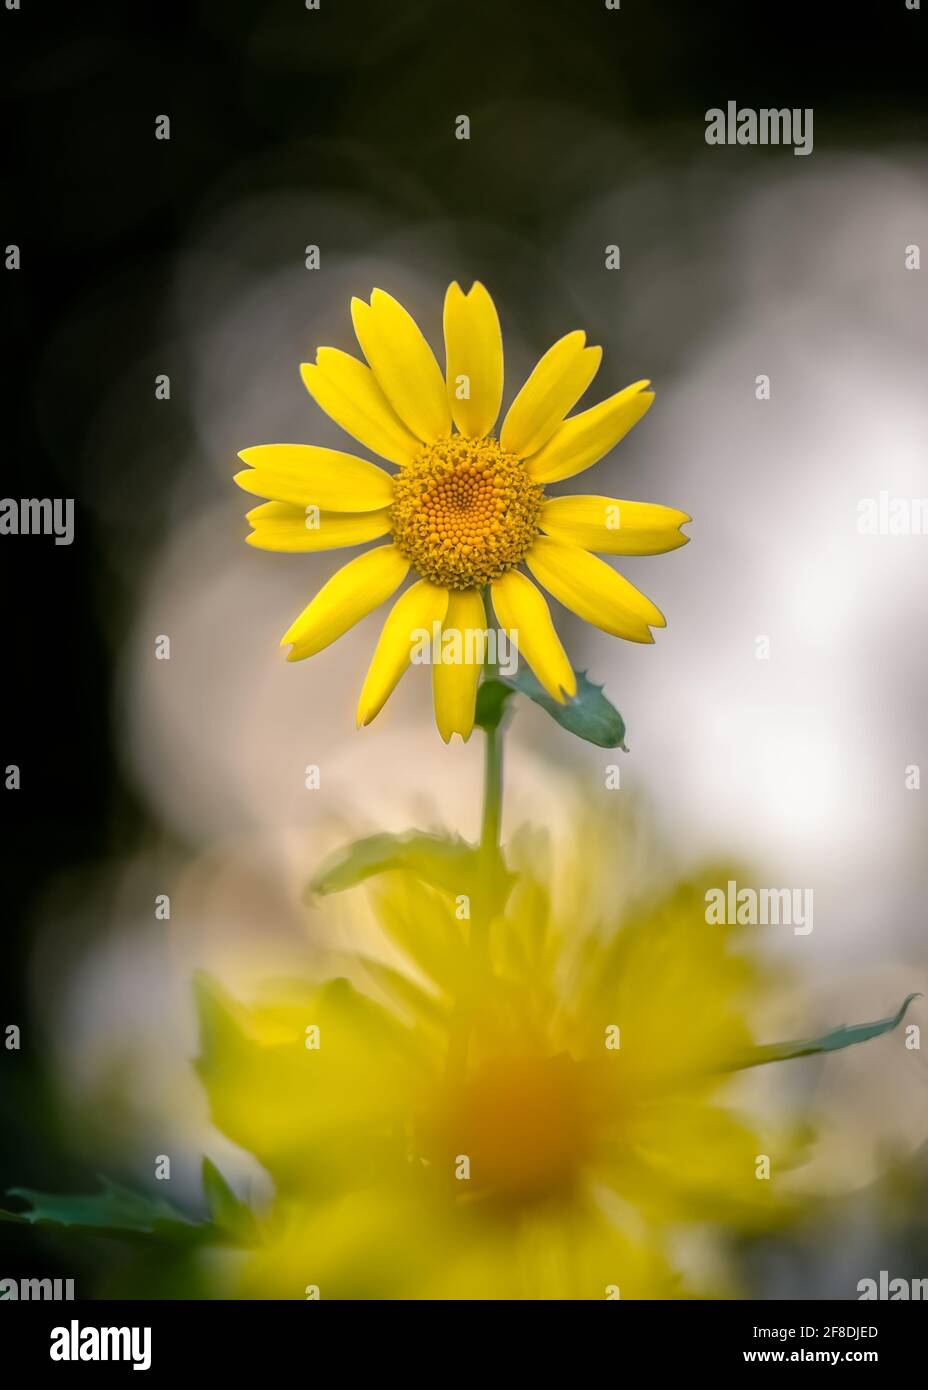 Primer artístico de la flor de caléndula de maíz amarillo con flor amarilla borrosa en primer plano, contra un fondo borroso atractivo. Foto de stock